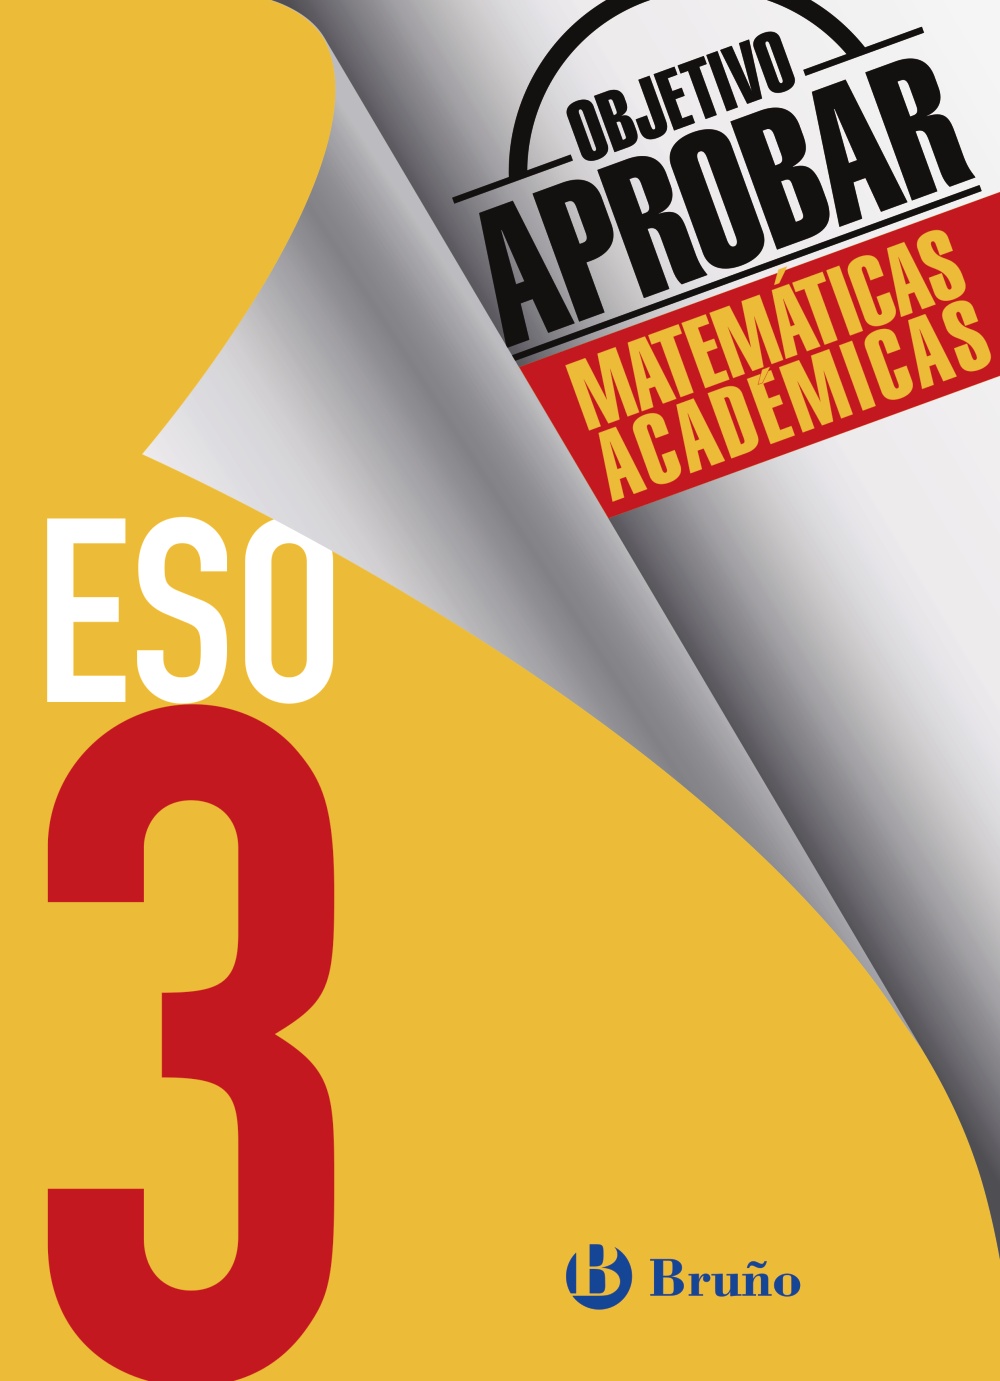 Solucionario Objetivo Aprobar Matematicas Academicas 3 ESO Bruño  PDF Ejercicios Resueltos-pdf